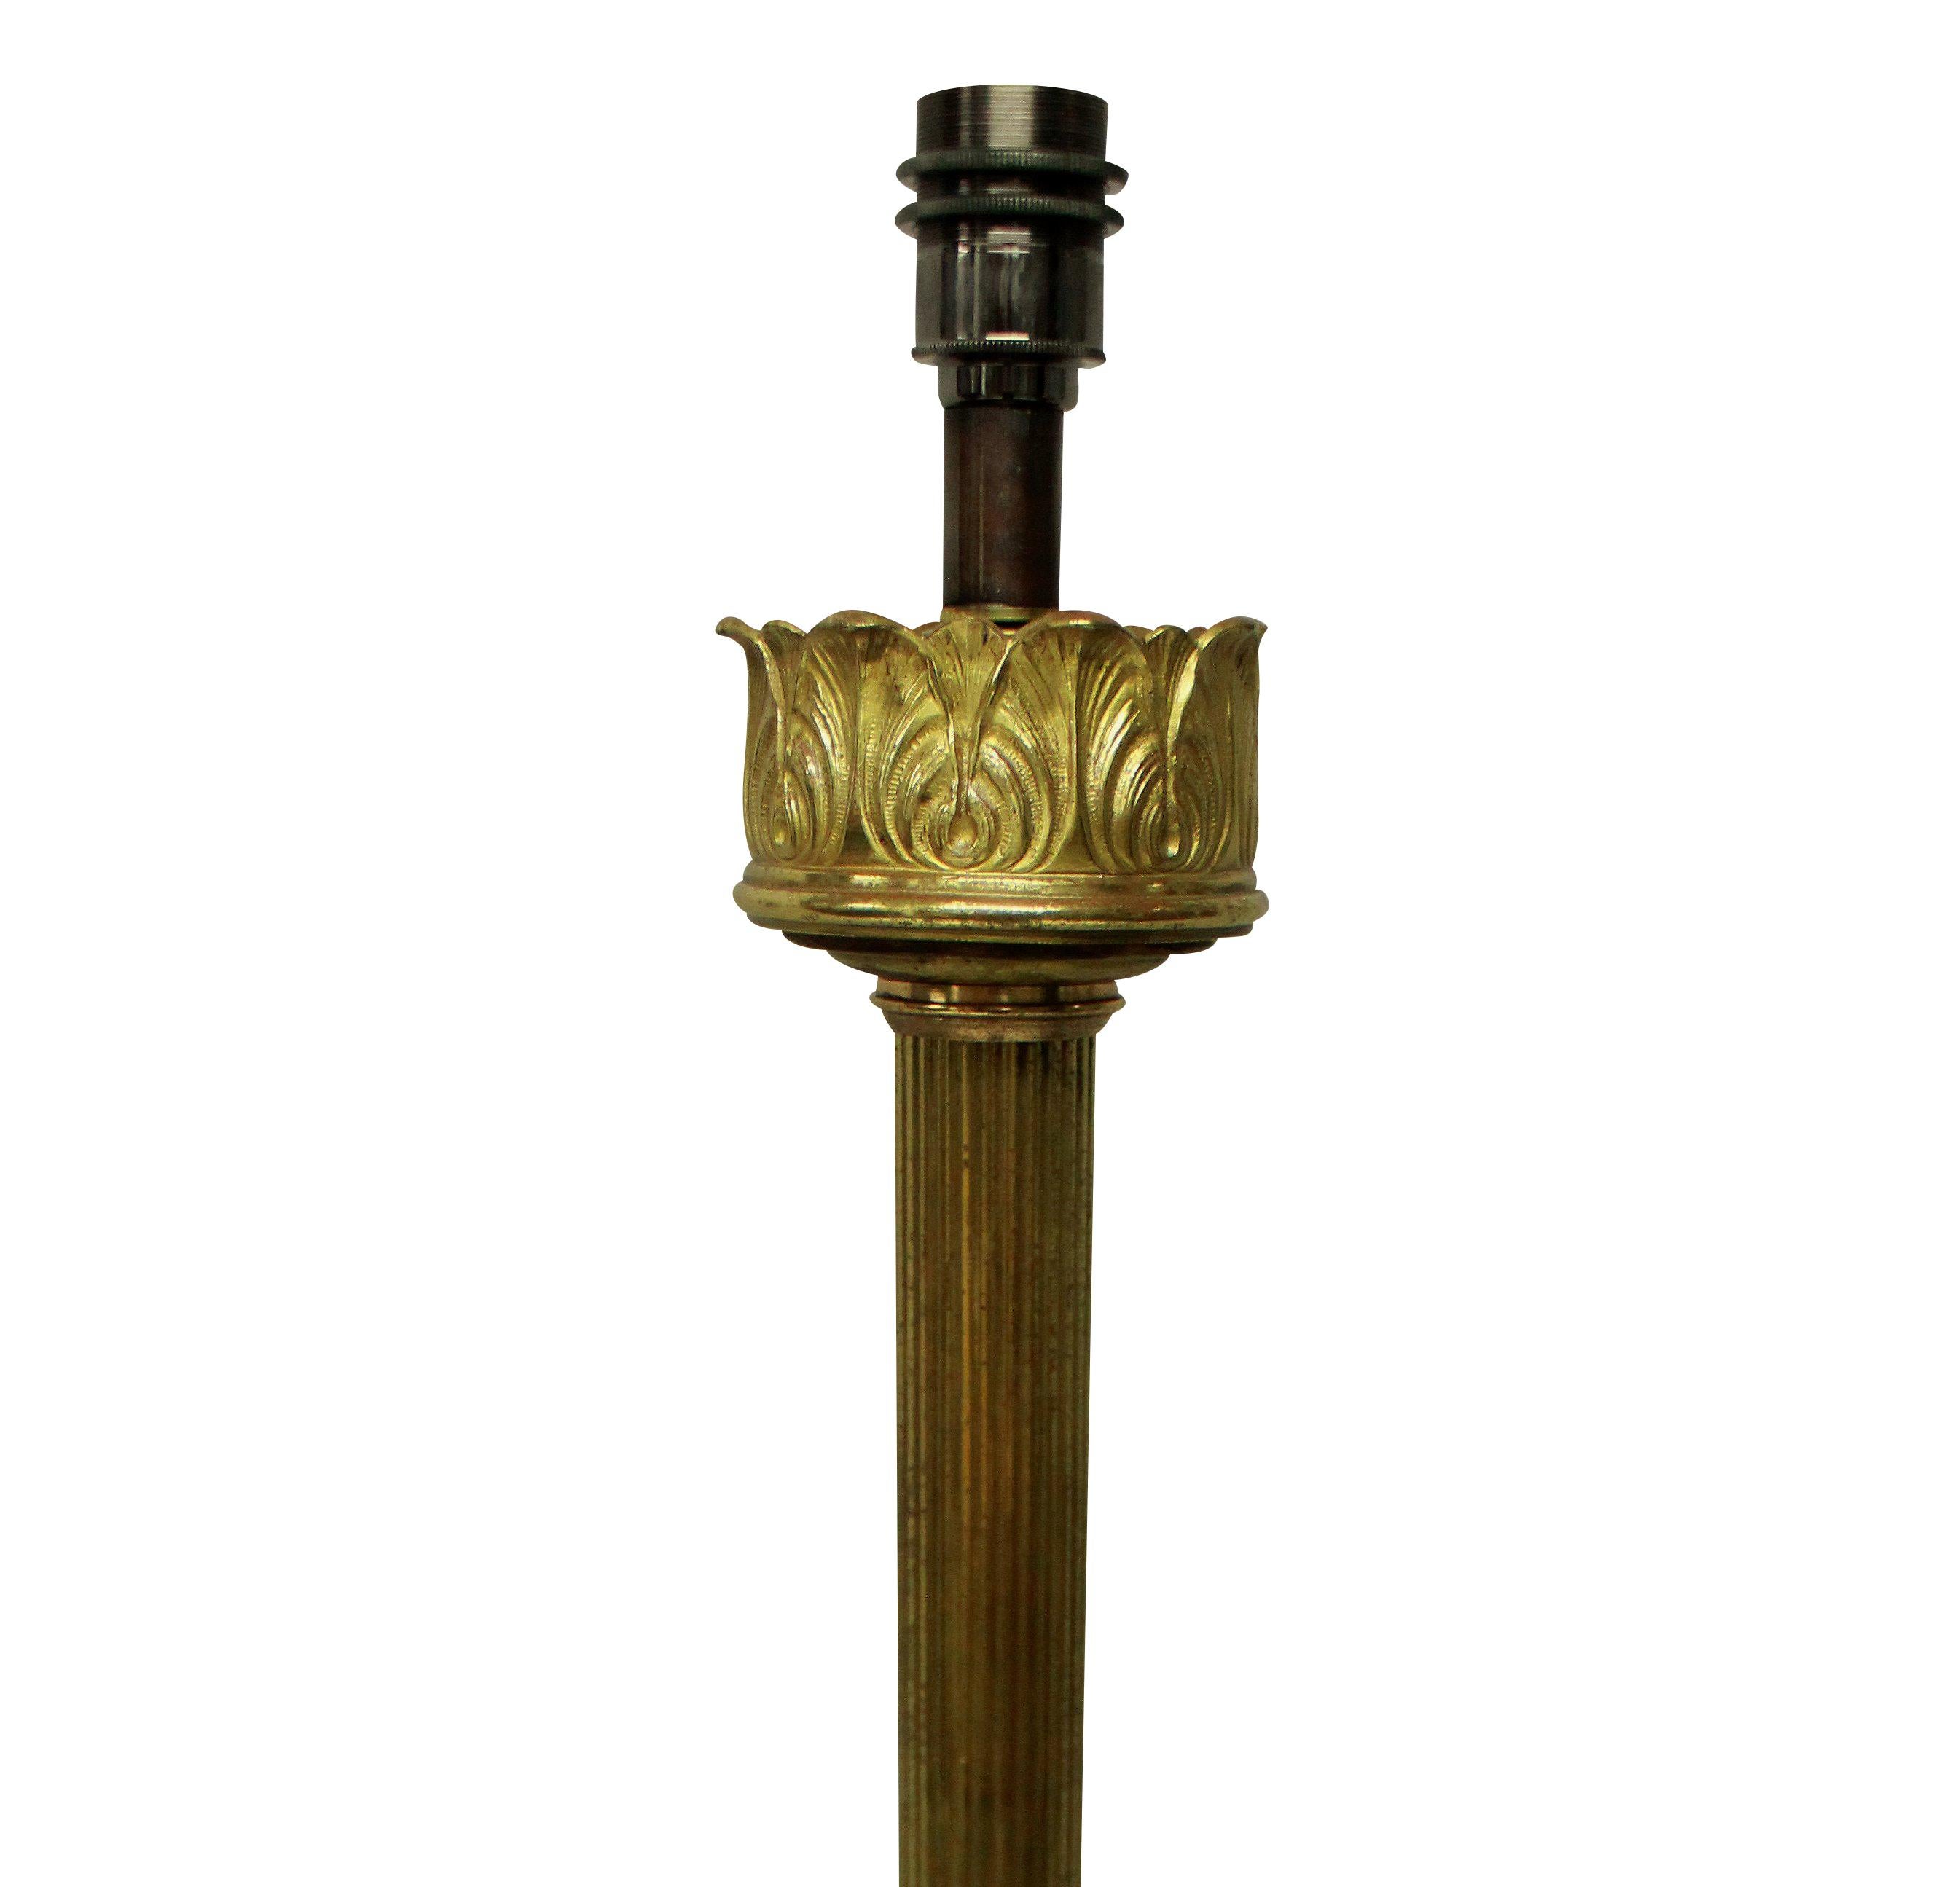 Une grande lampe anglaise à colonne cannelée en bronze doré, autrefois pour le pétrole, maintenant électrifiée.